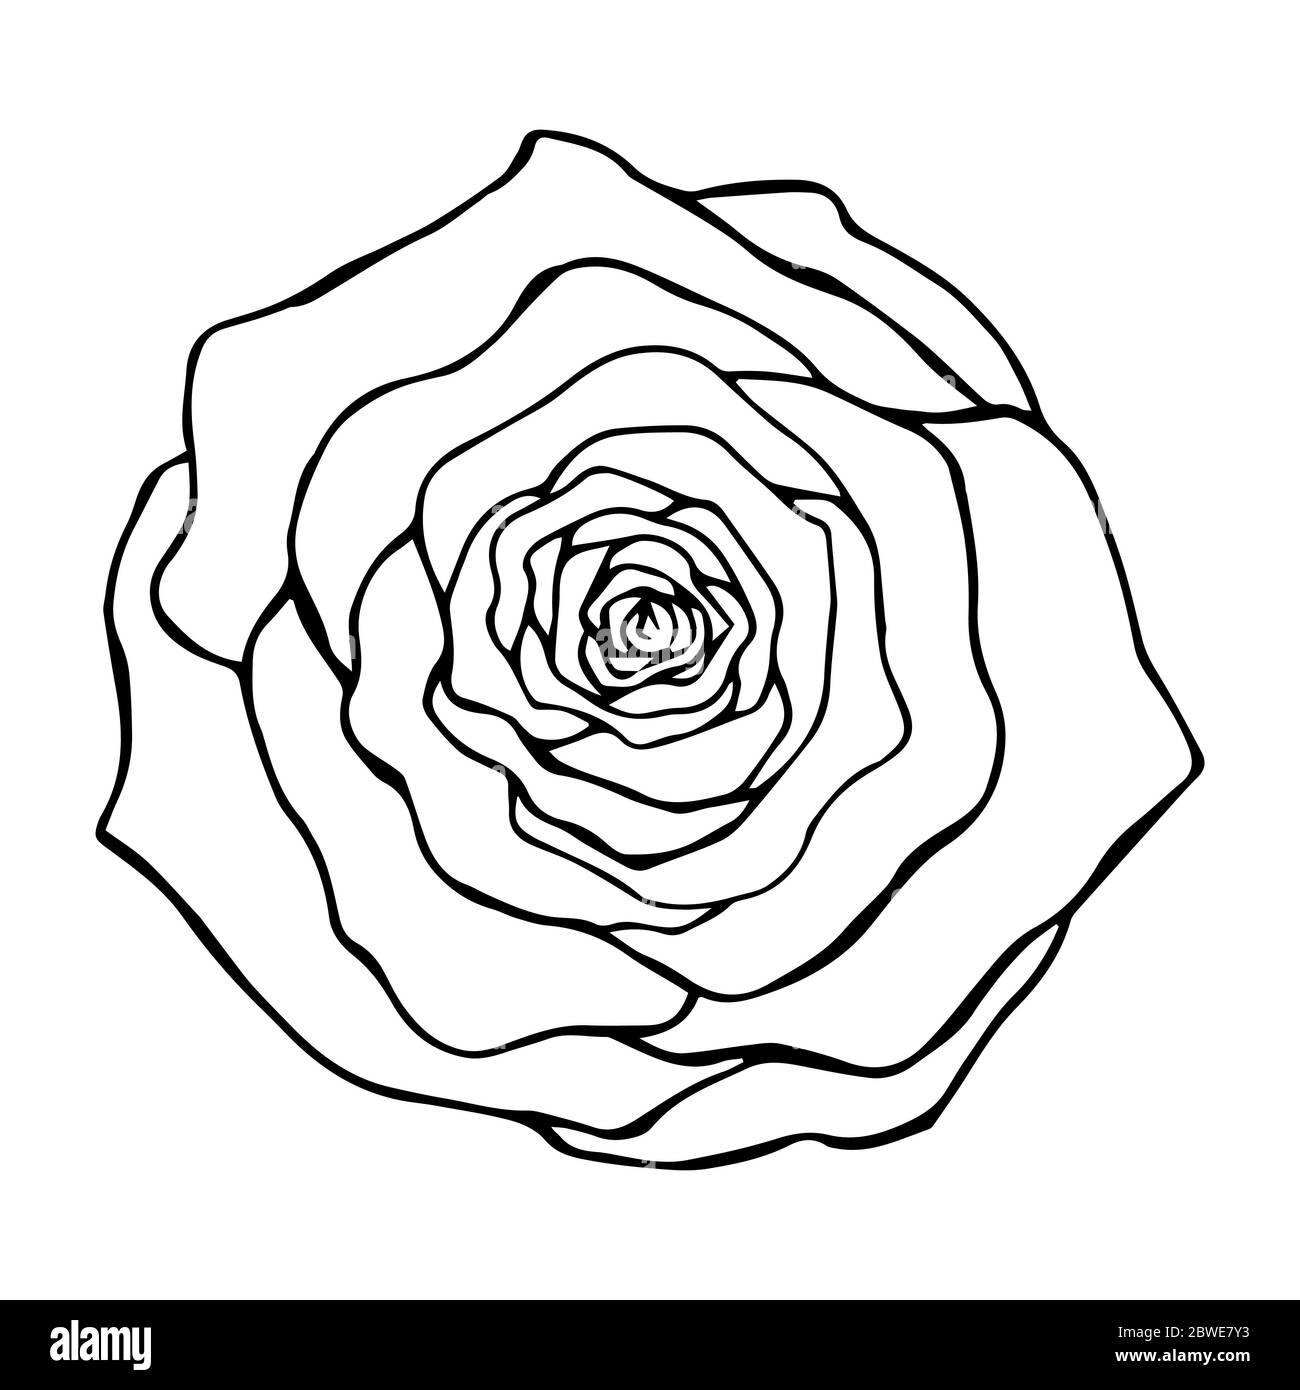 Rose Blume top view Konturzeichnung in schwarz auf weißem Hintergrund  isoliert, Vektor-Illustration für Design und Derok, Drucke, Logo, Tattoo,  Vorlage Stock-Vektorgrafik - Alamy